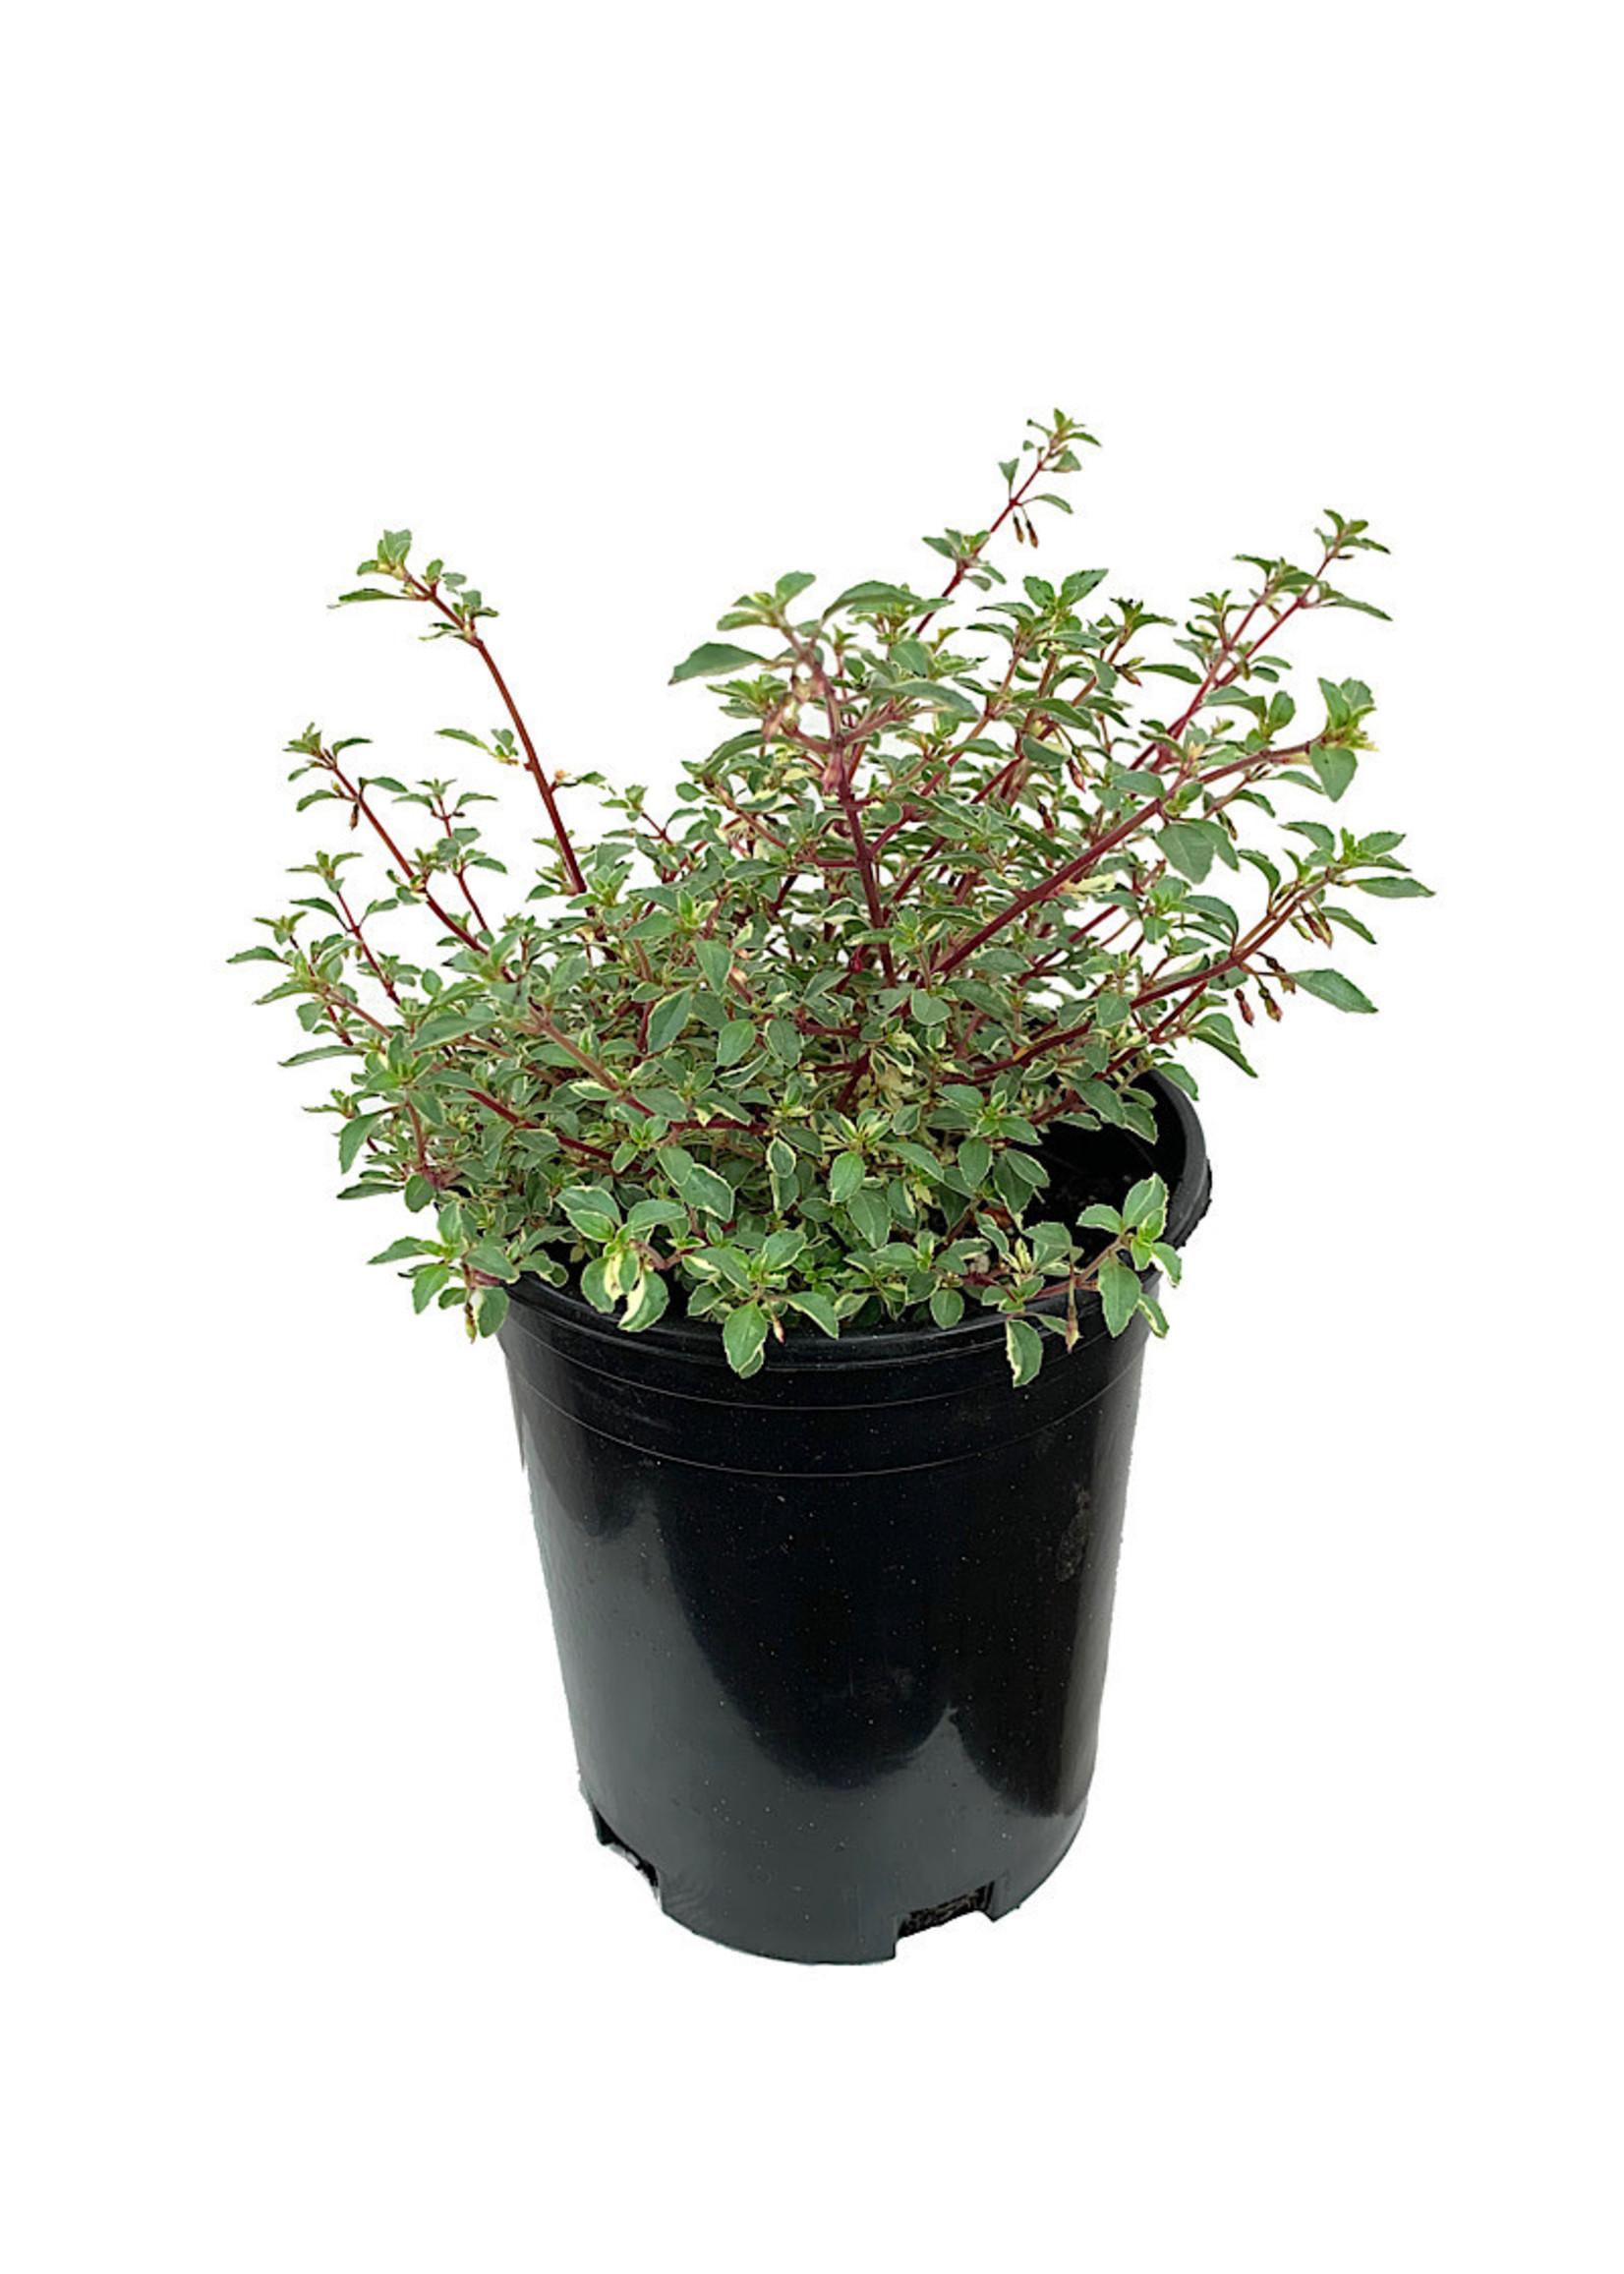 Fuchsia variegata 'Lottie Hobby' 1 Gallon